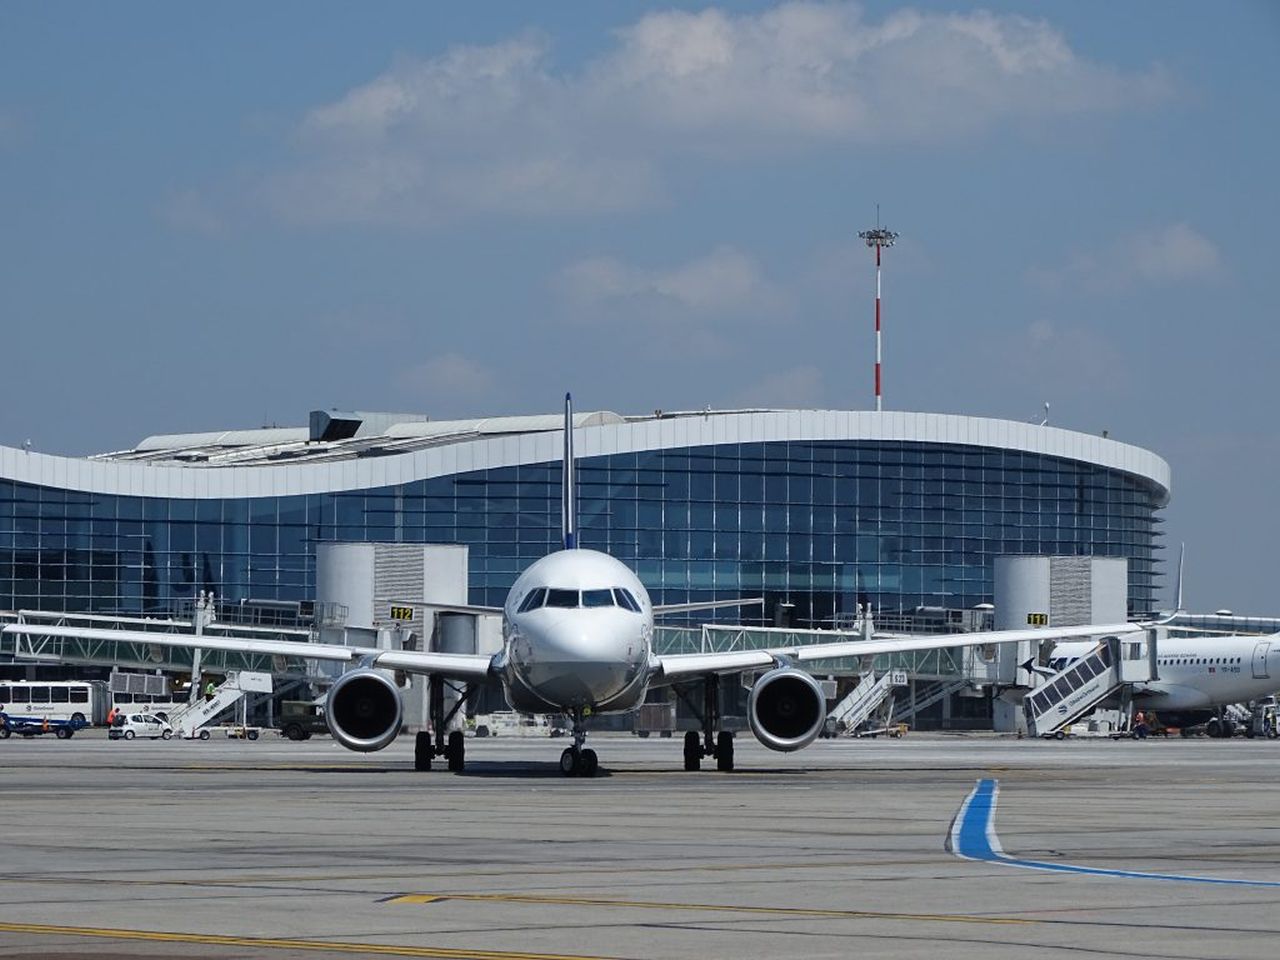 Vești bune pentru români! Se redeschide un aeroport important! Va prelua și o parte din traficul de pe Otopeni